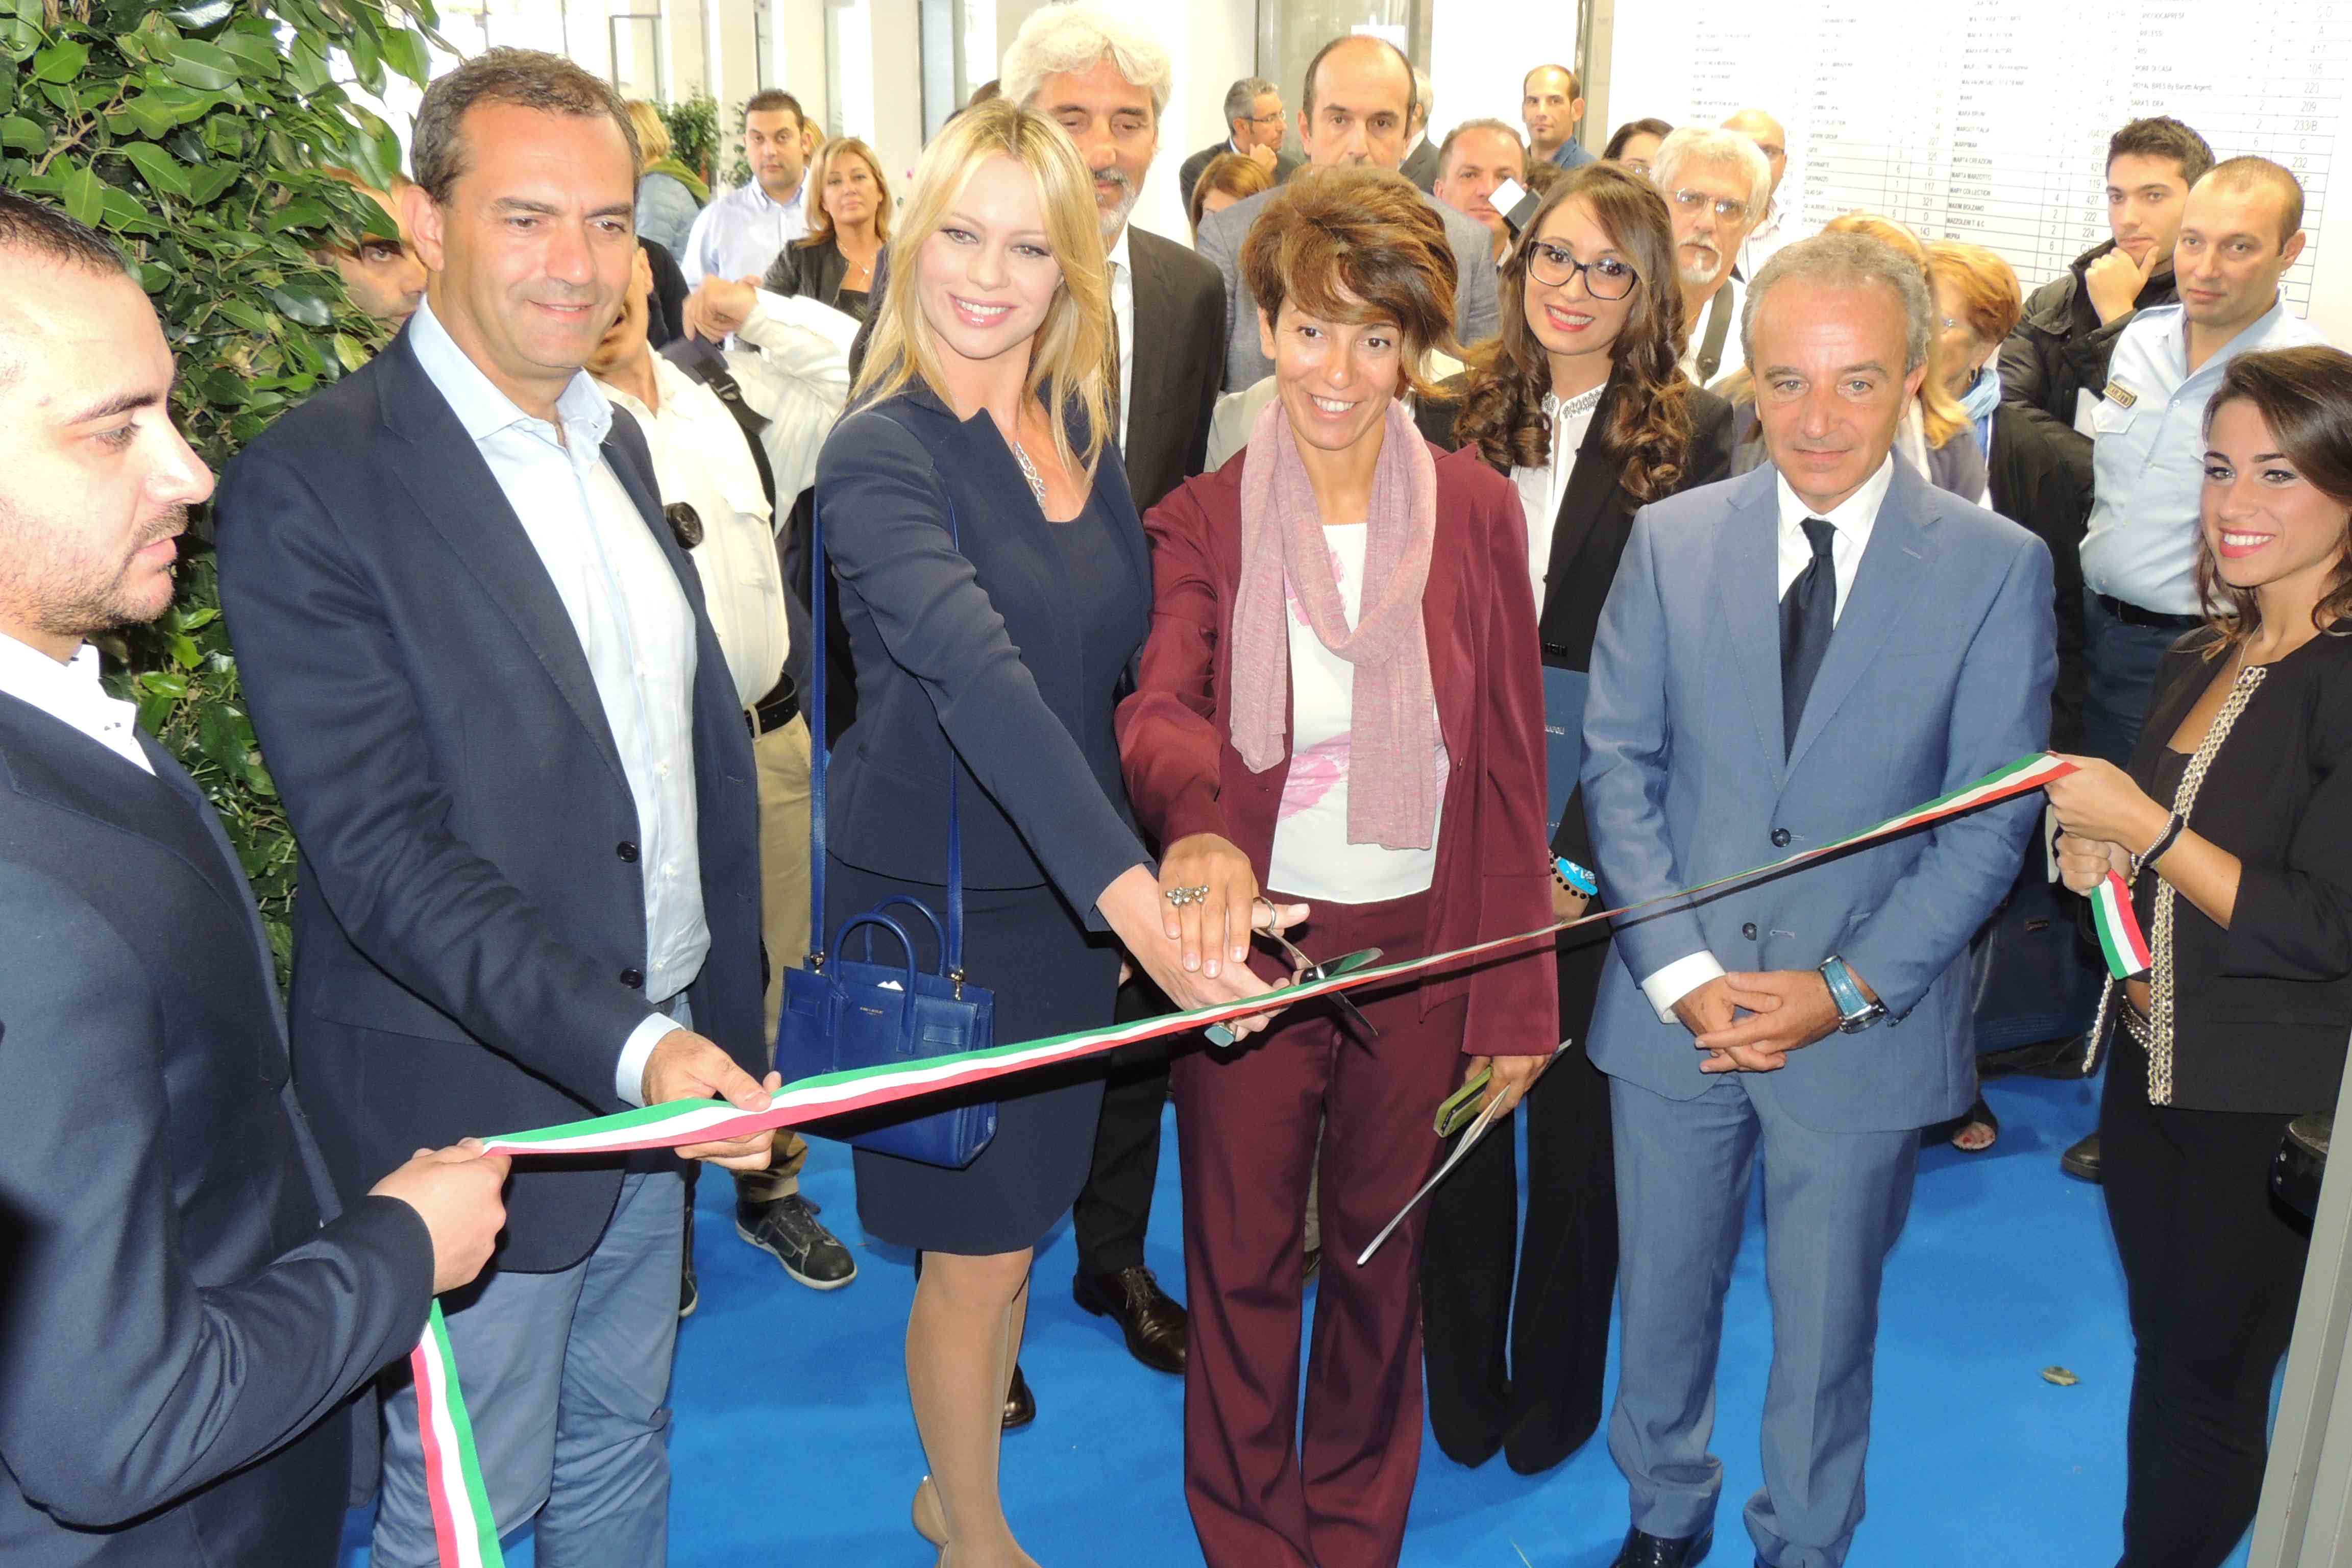  Inaugurazione salone Vebo, de Magistris dichiara: “Al Vebo l’Italia creativa che si incrocia e produce”